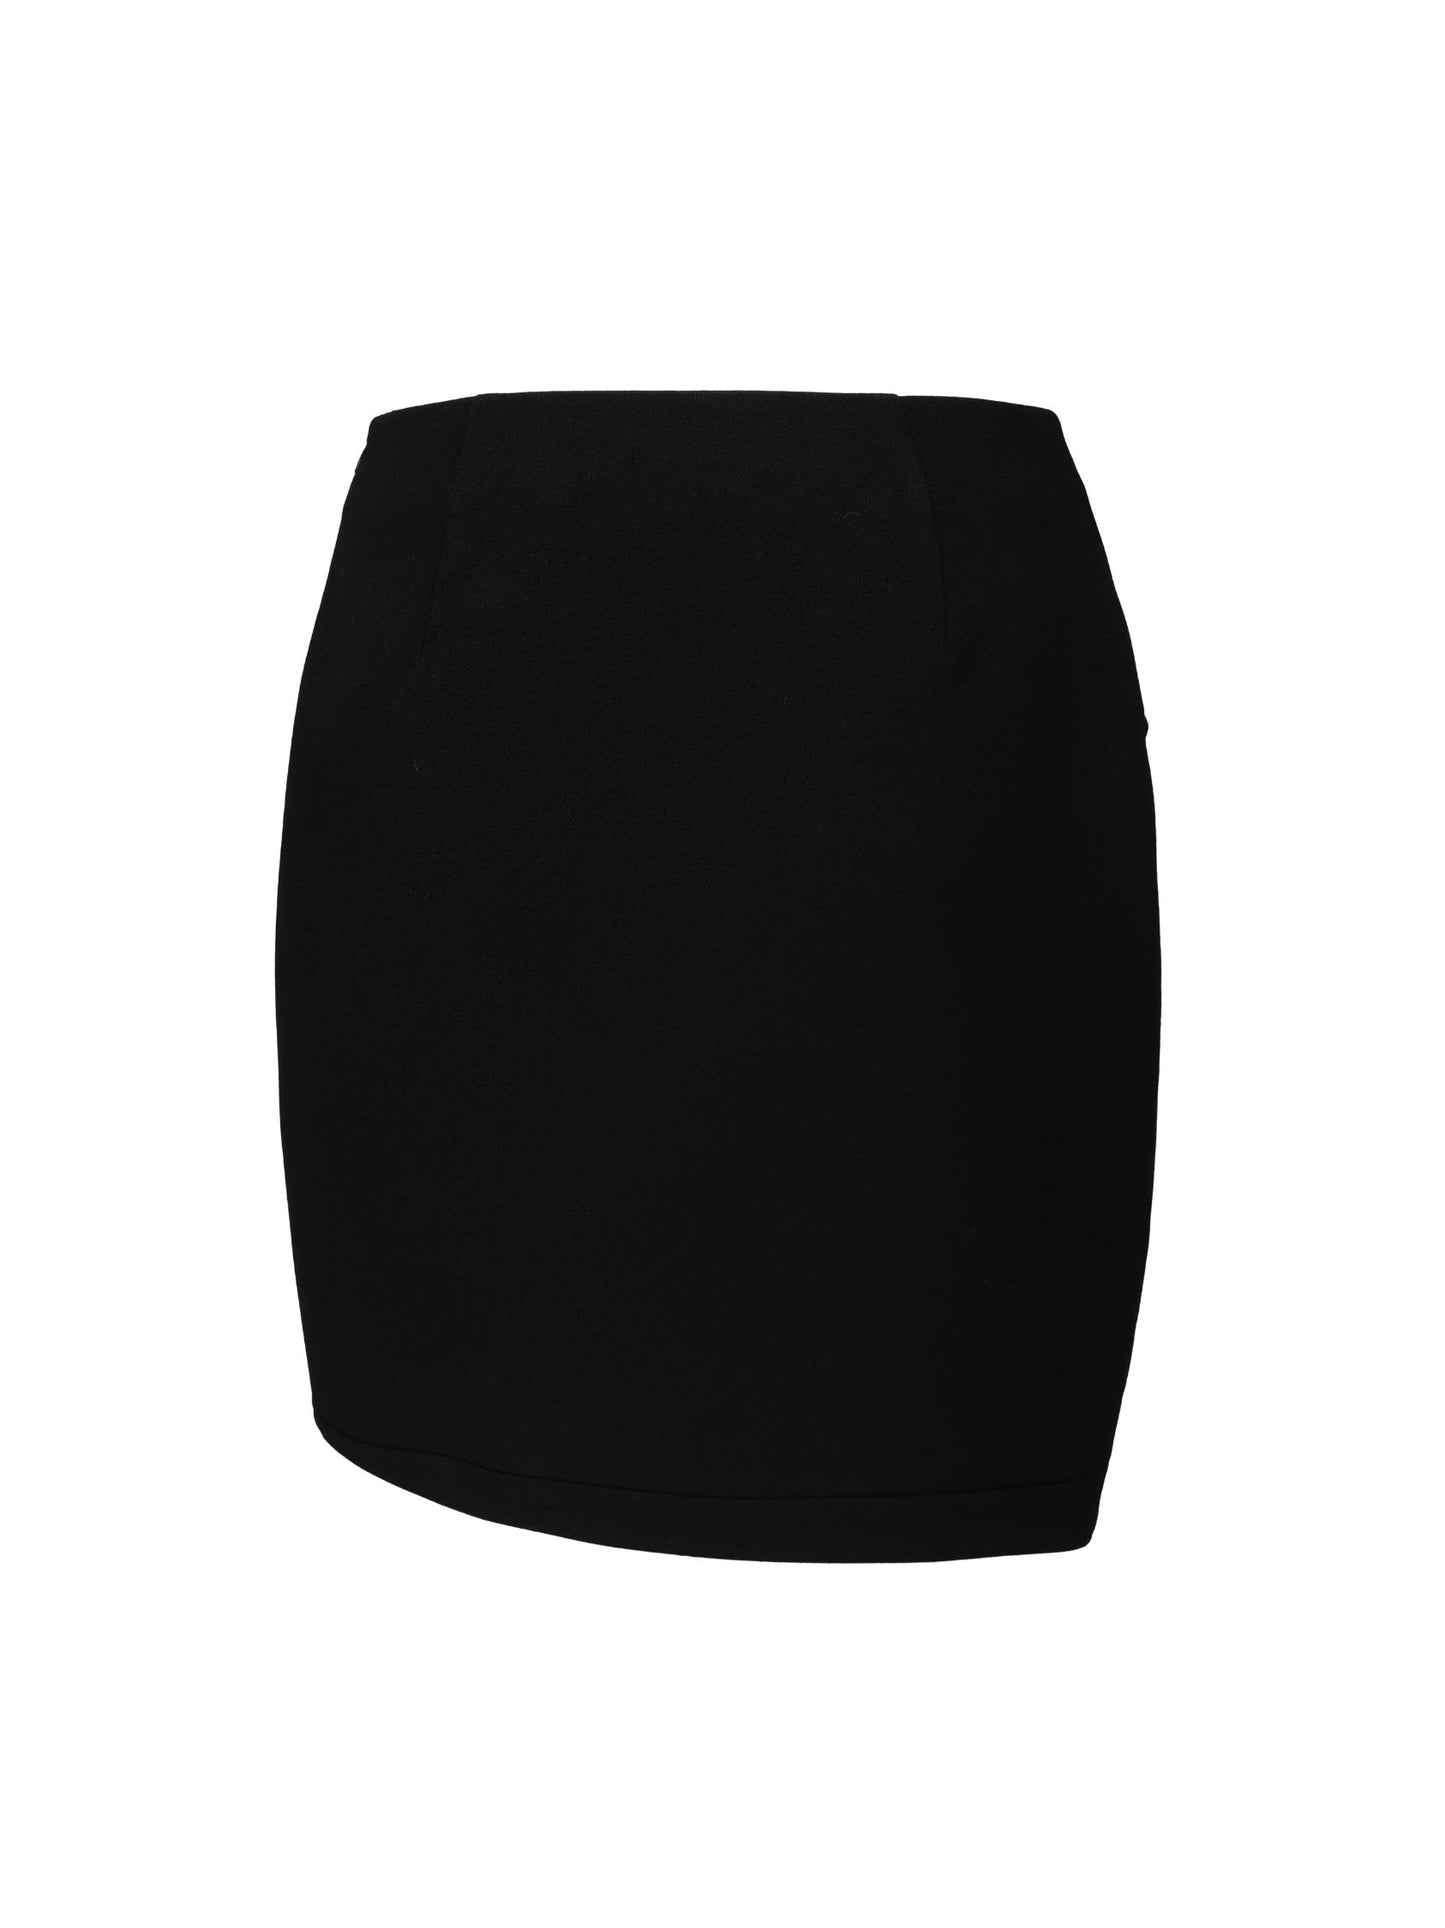 Brooke Skirt (Black)